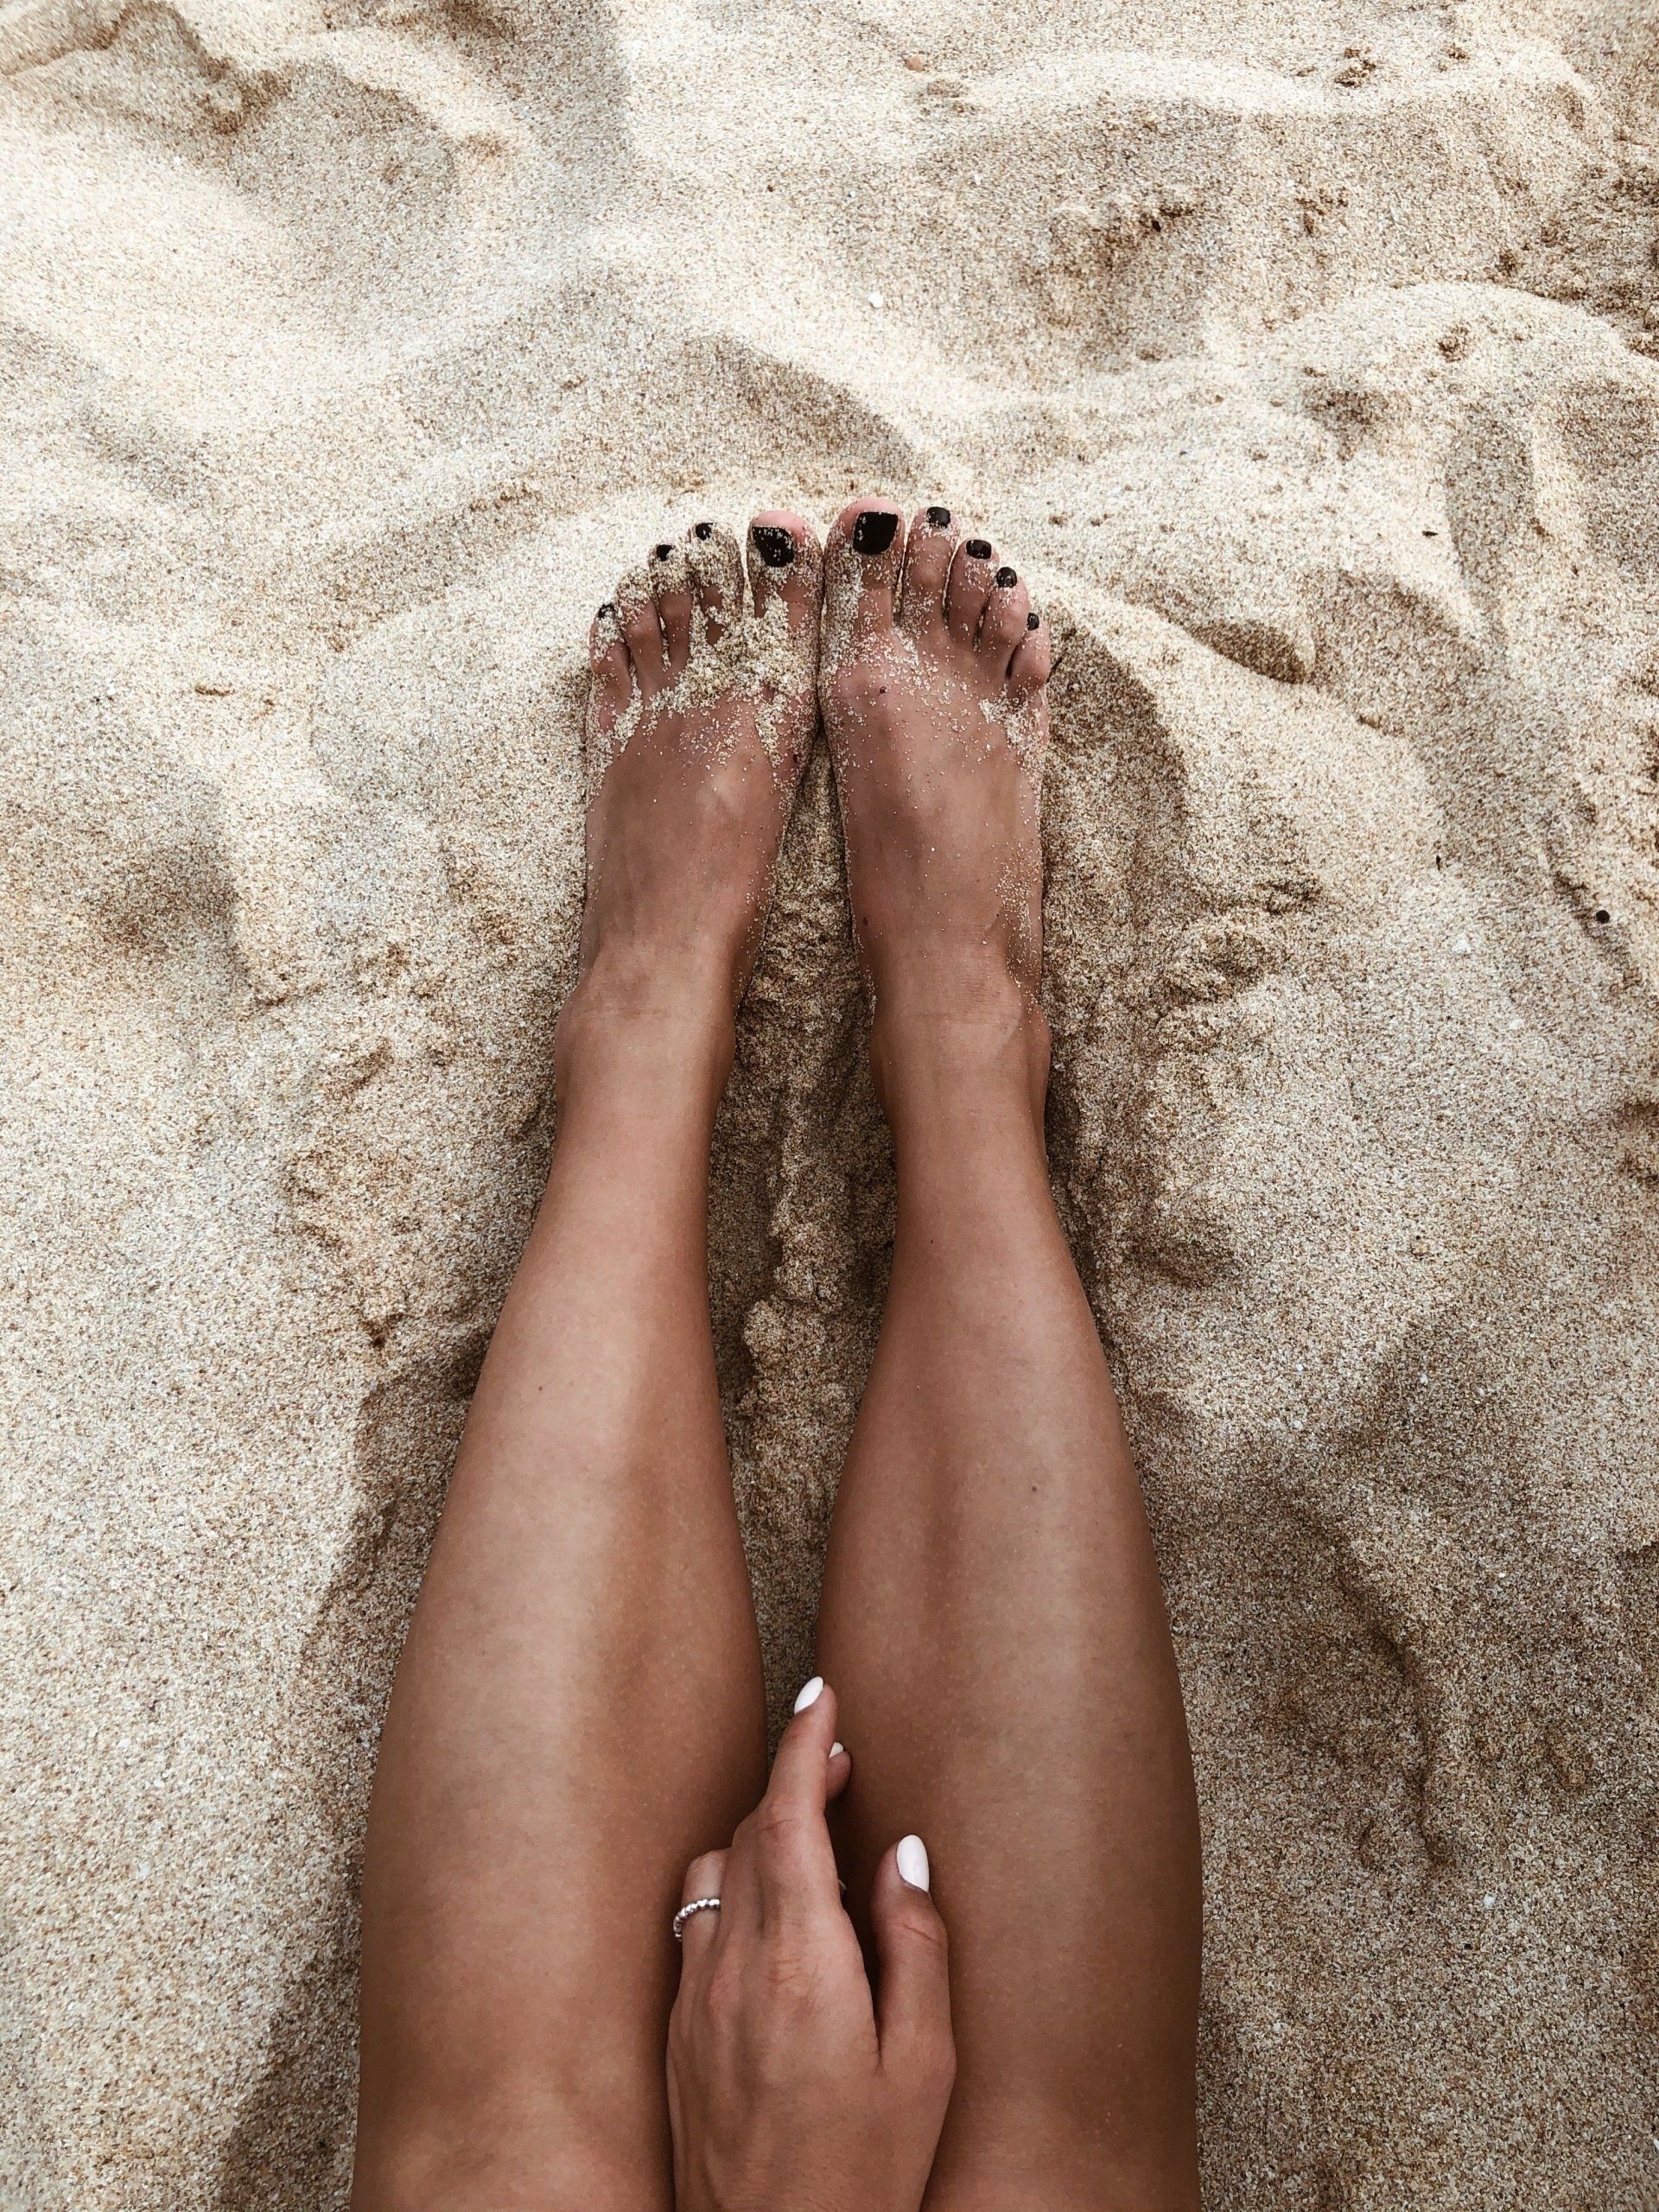 legs in beach sand 